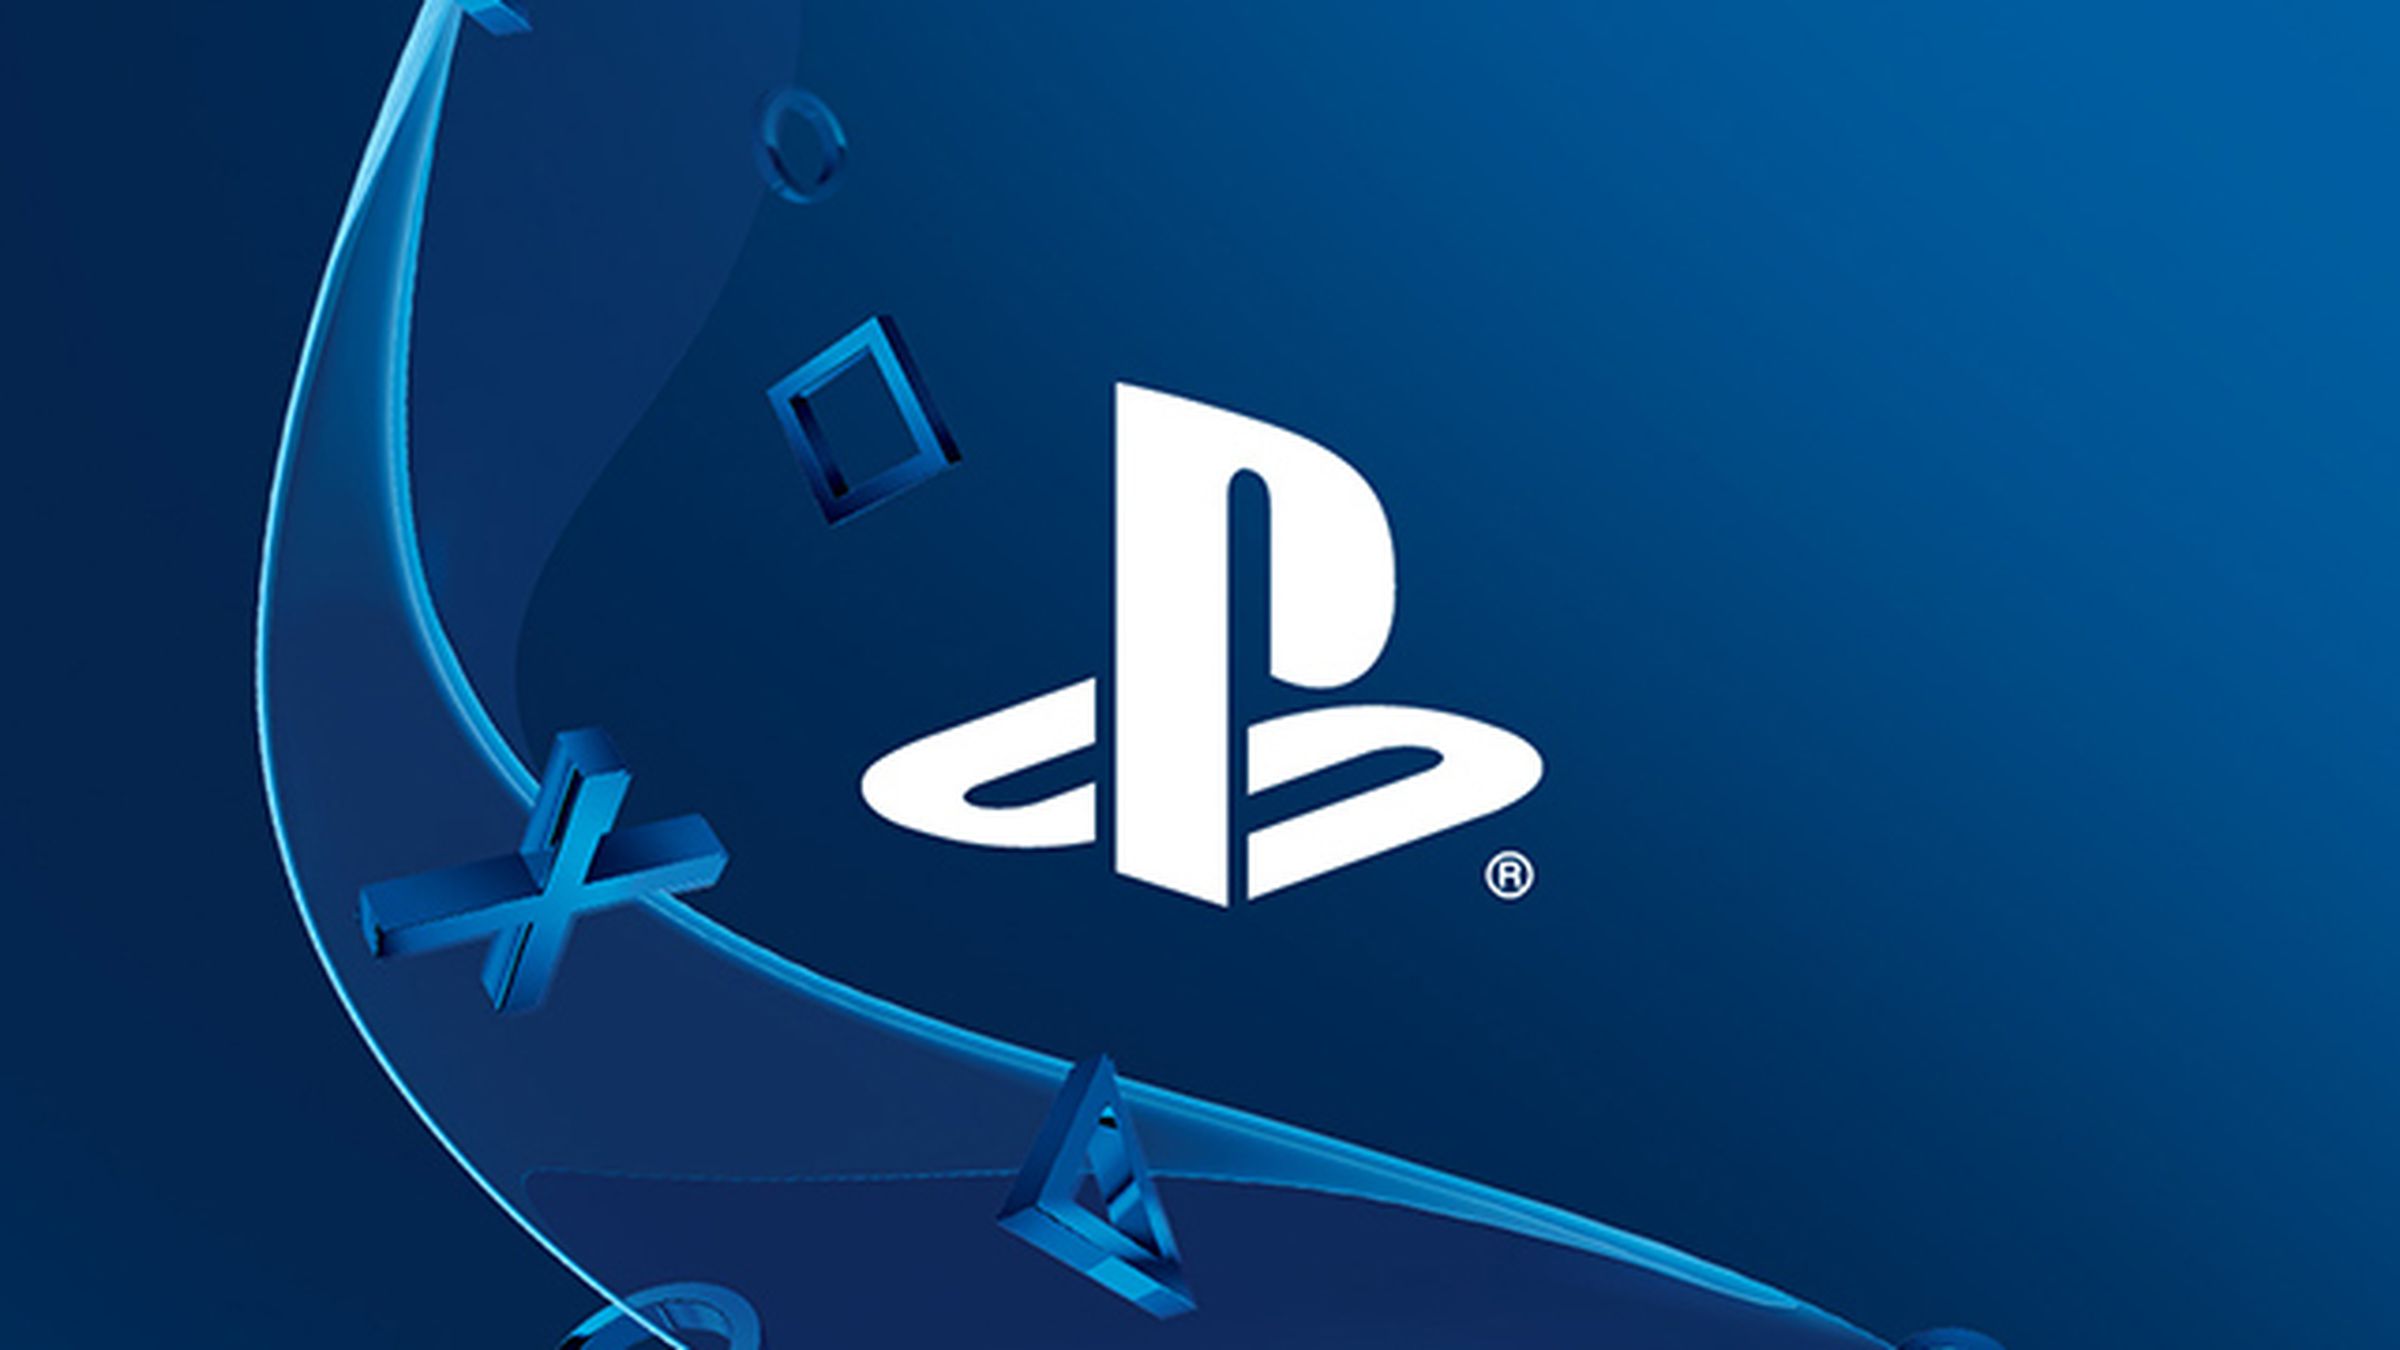 Sony already runs PlayStation Now.